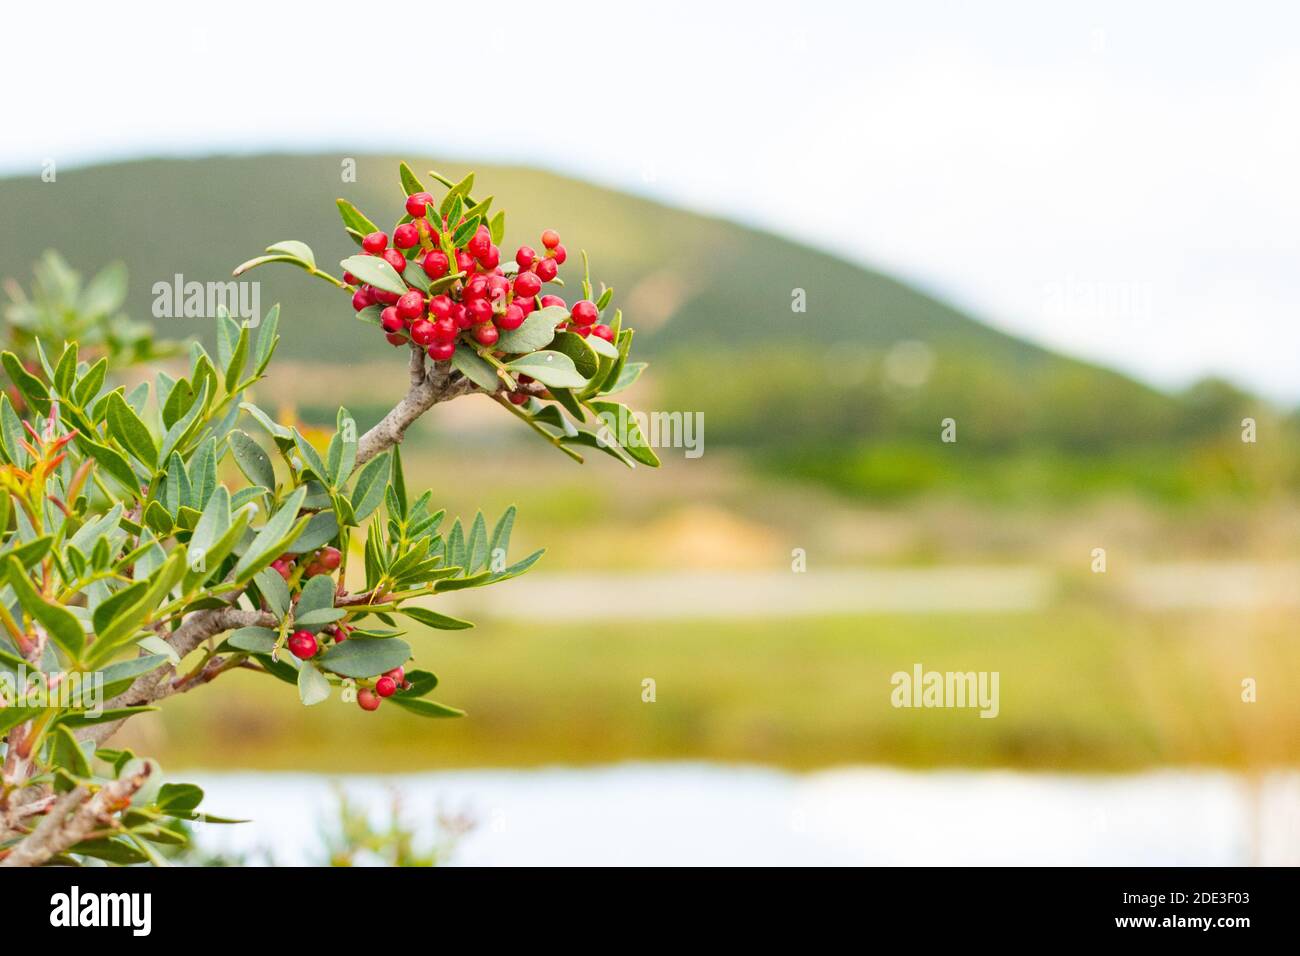 Plant of pistacia lentiscus with berries Stock Photo